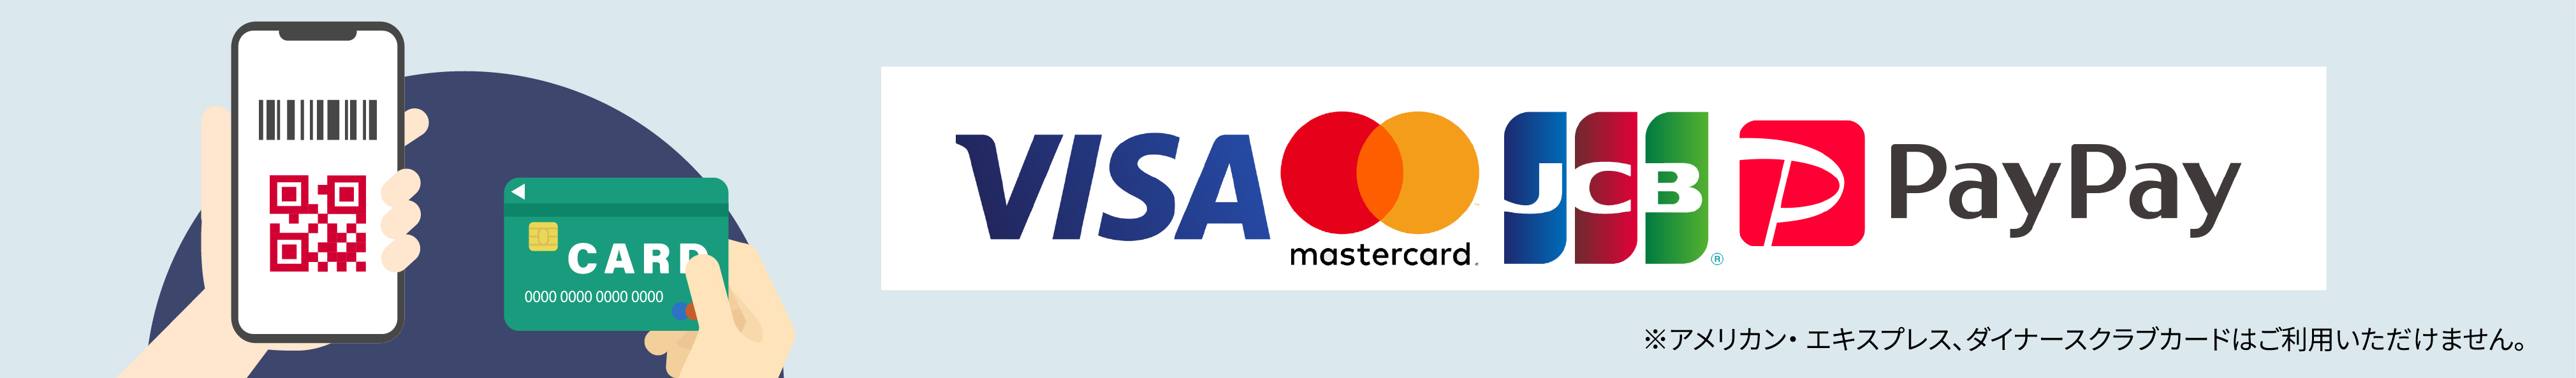 支払い対応カード VISA MasterCard JCB PayPay